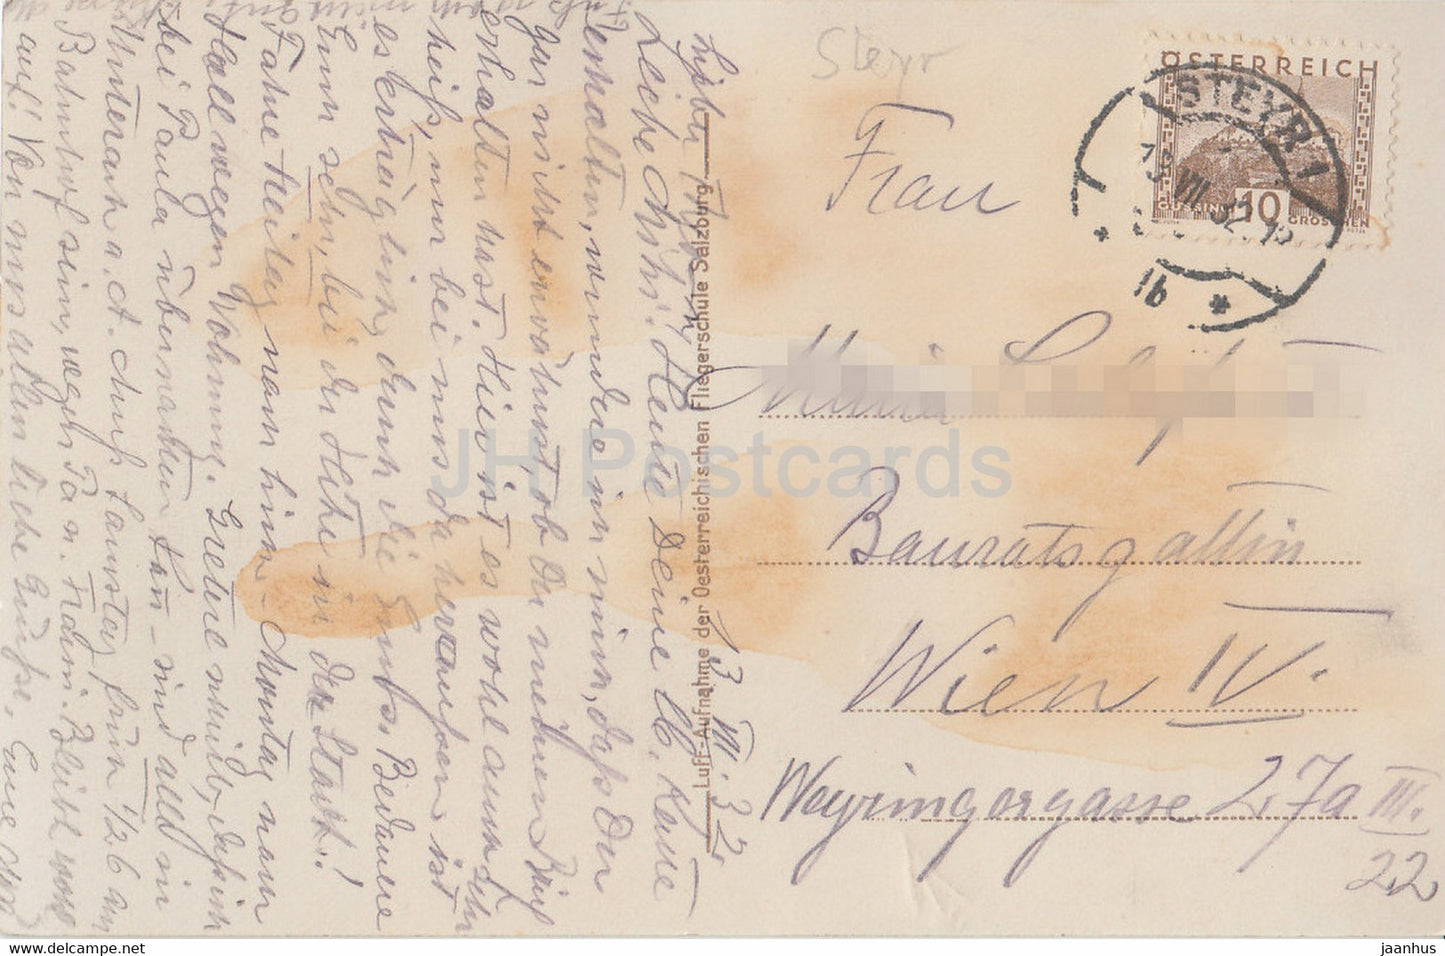 Steyr - Fliegeraufnahme 384 - carte postale ancienne - 1932 - Autriche - utilisé